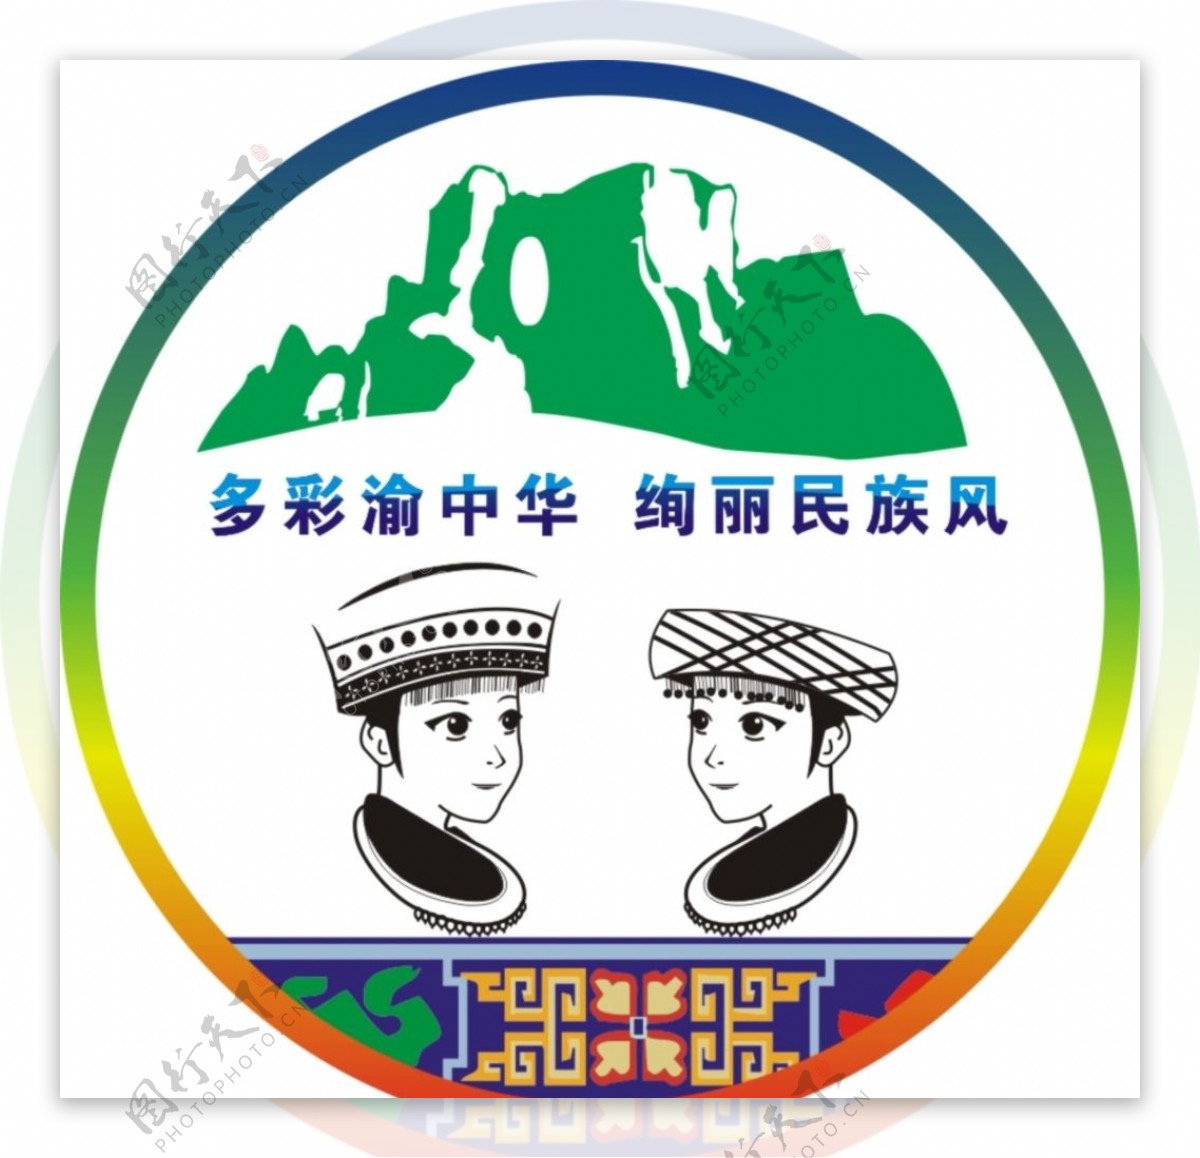 民族风旅游logo